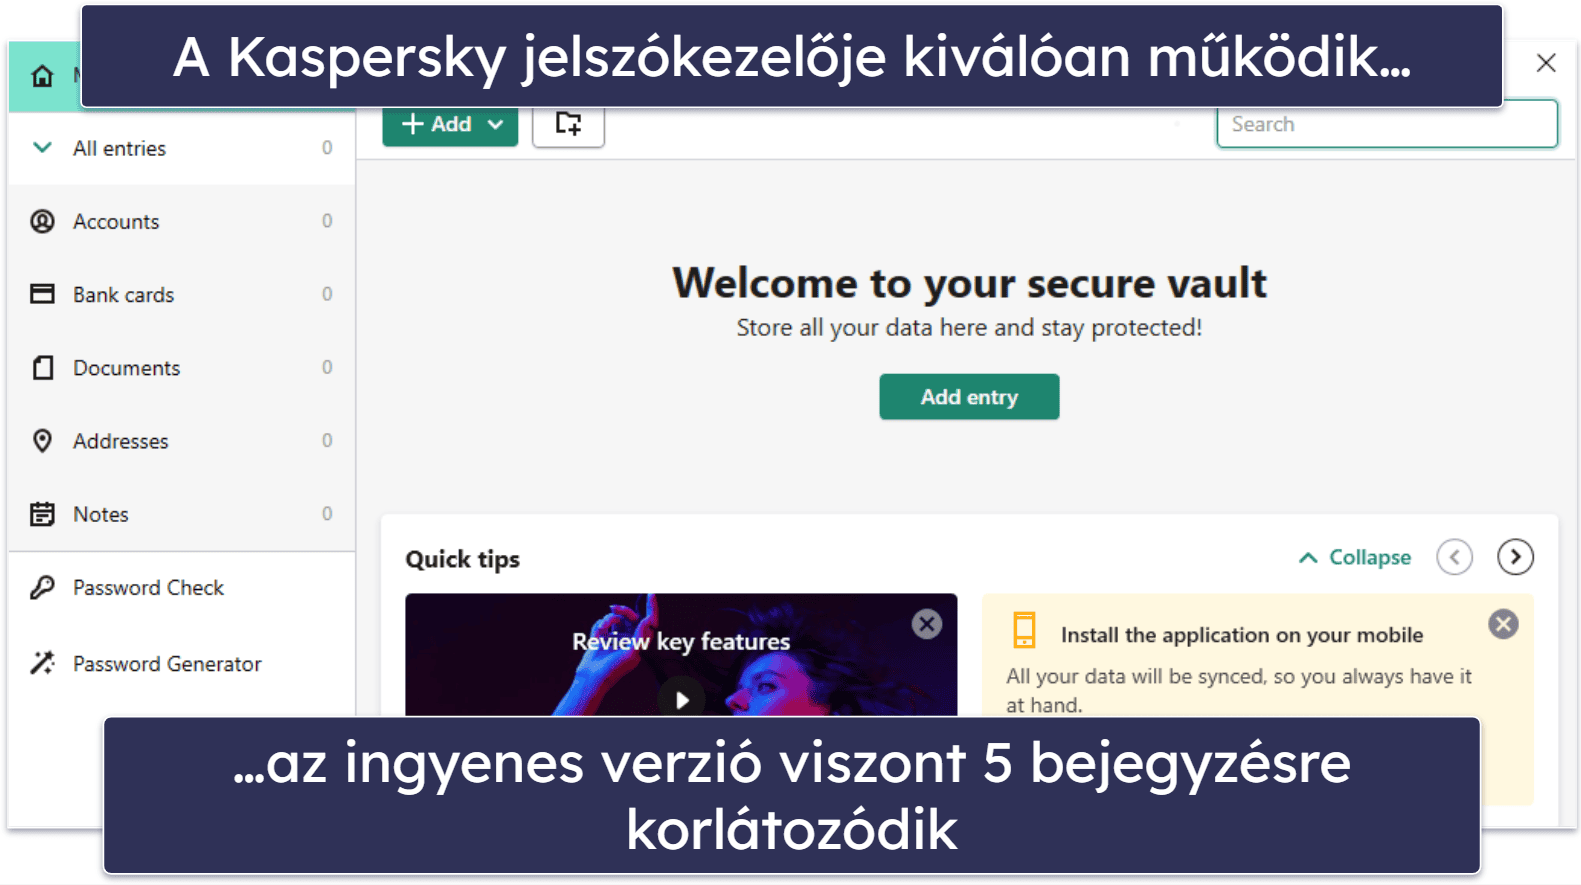 6. Kaspersky Free — Az ingyenes funkciók jó választéka